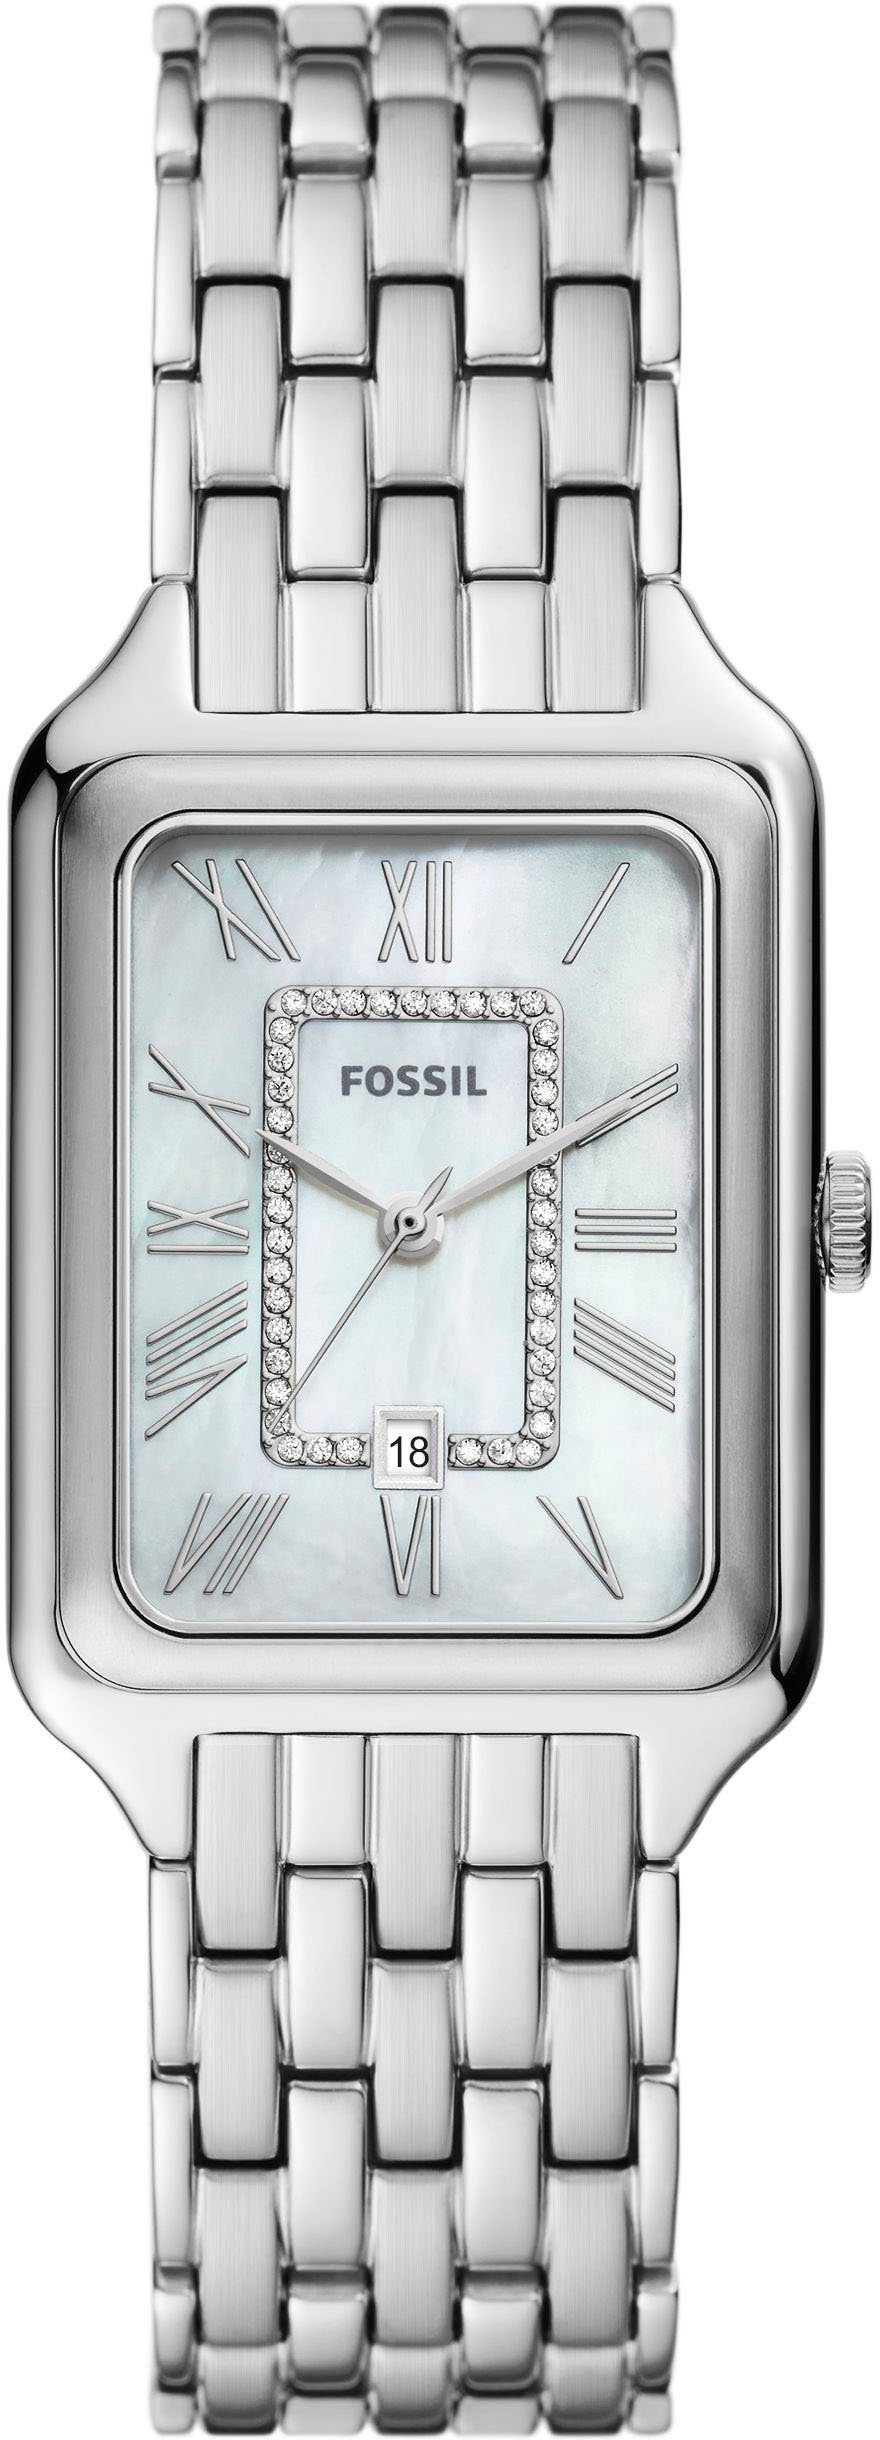 Fossil Quarzuhr RAQUEL, ES5306, Armbanduhr, Damenuhr, Datum, analog